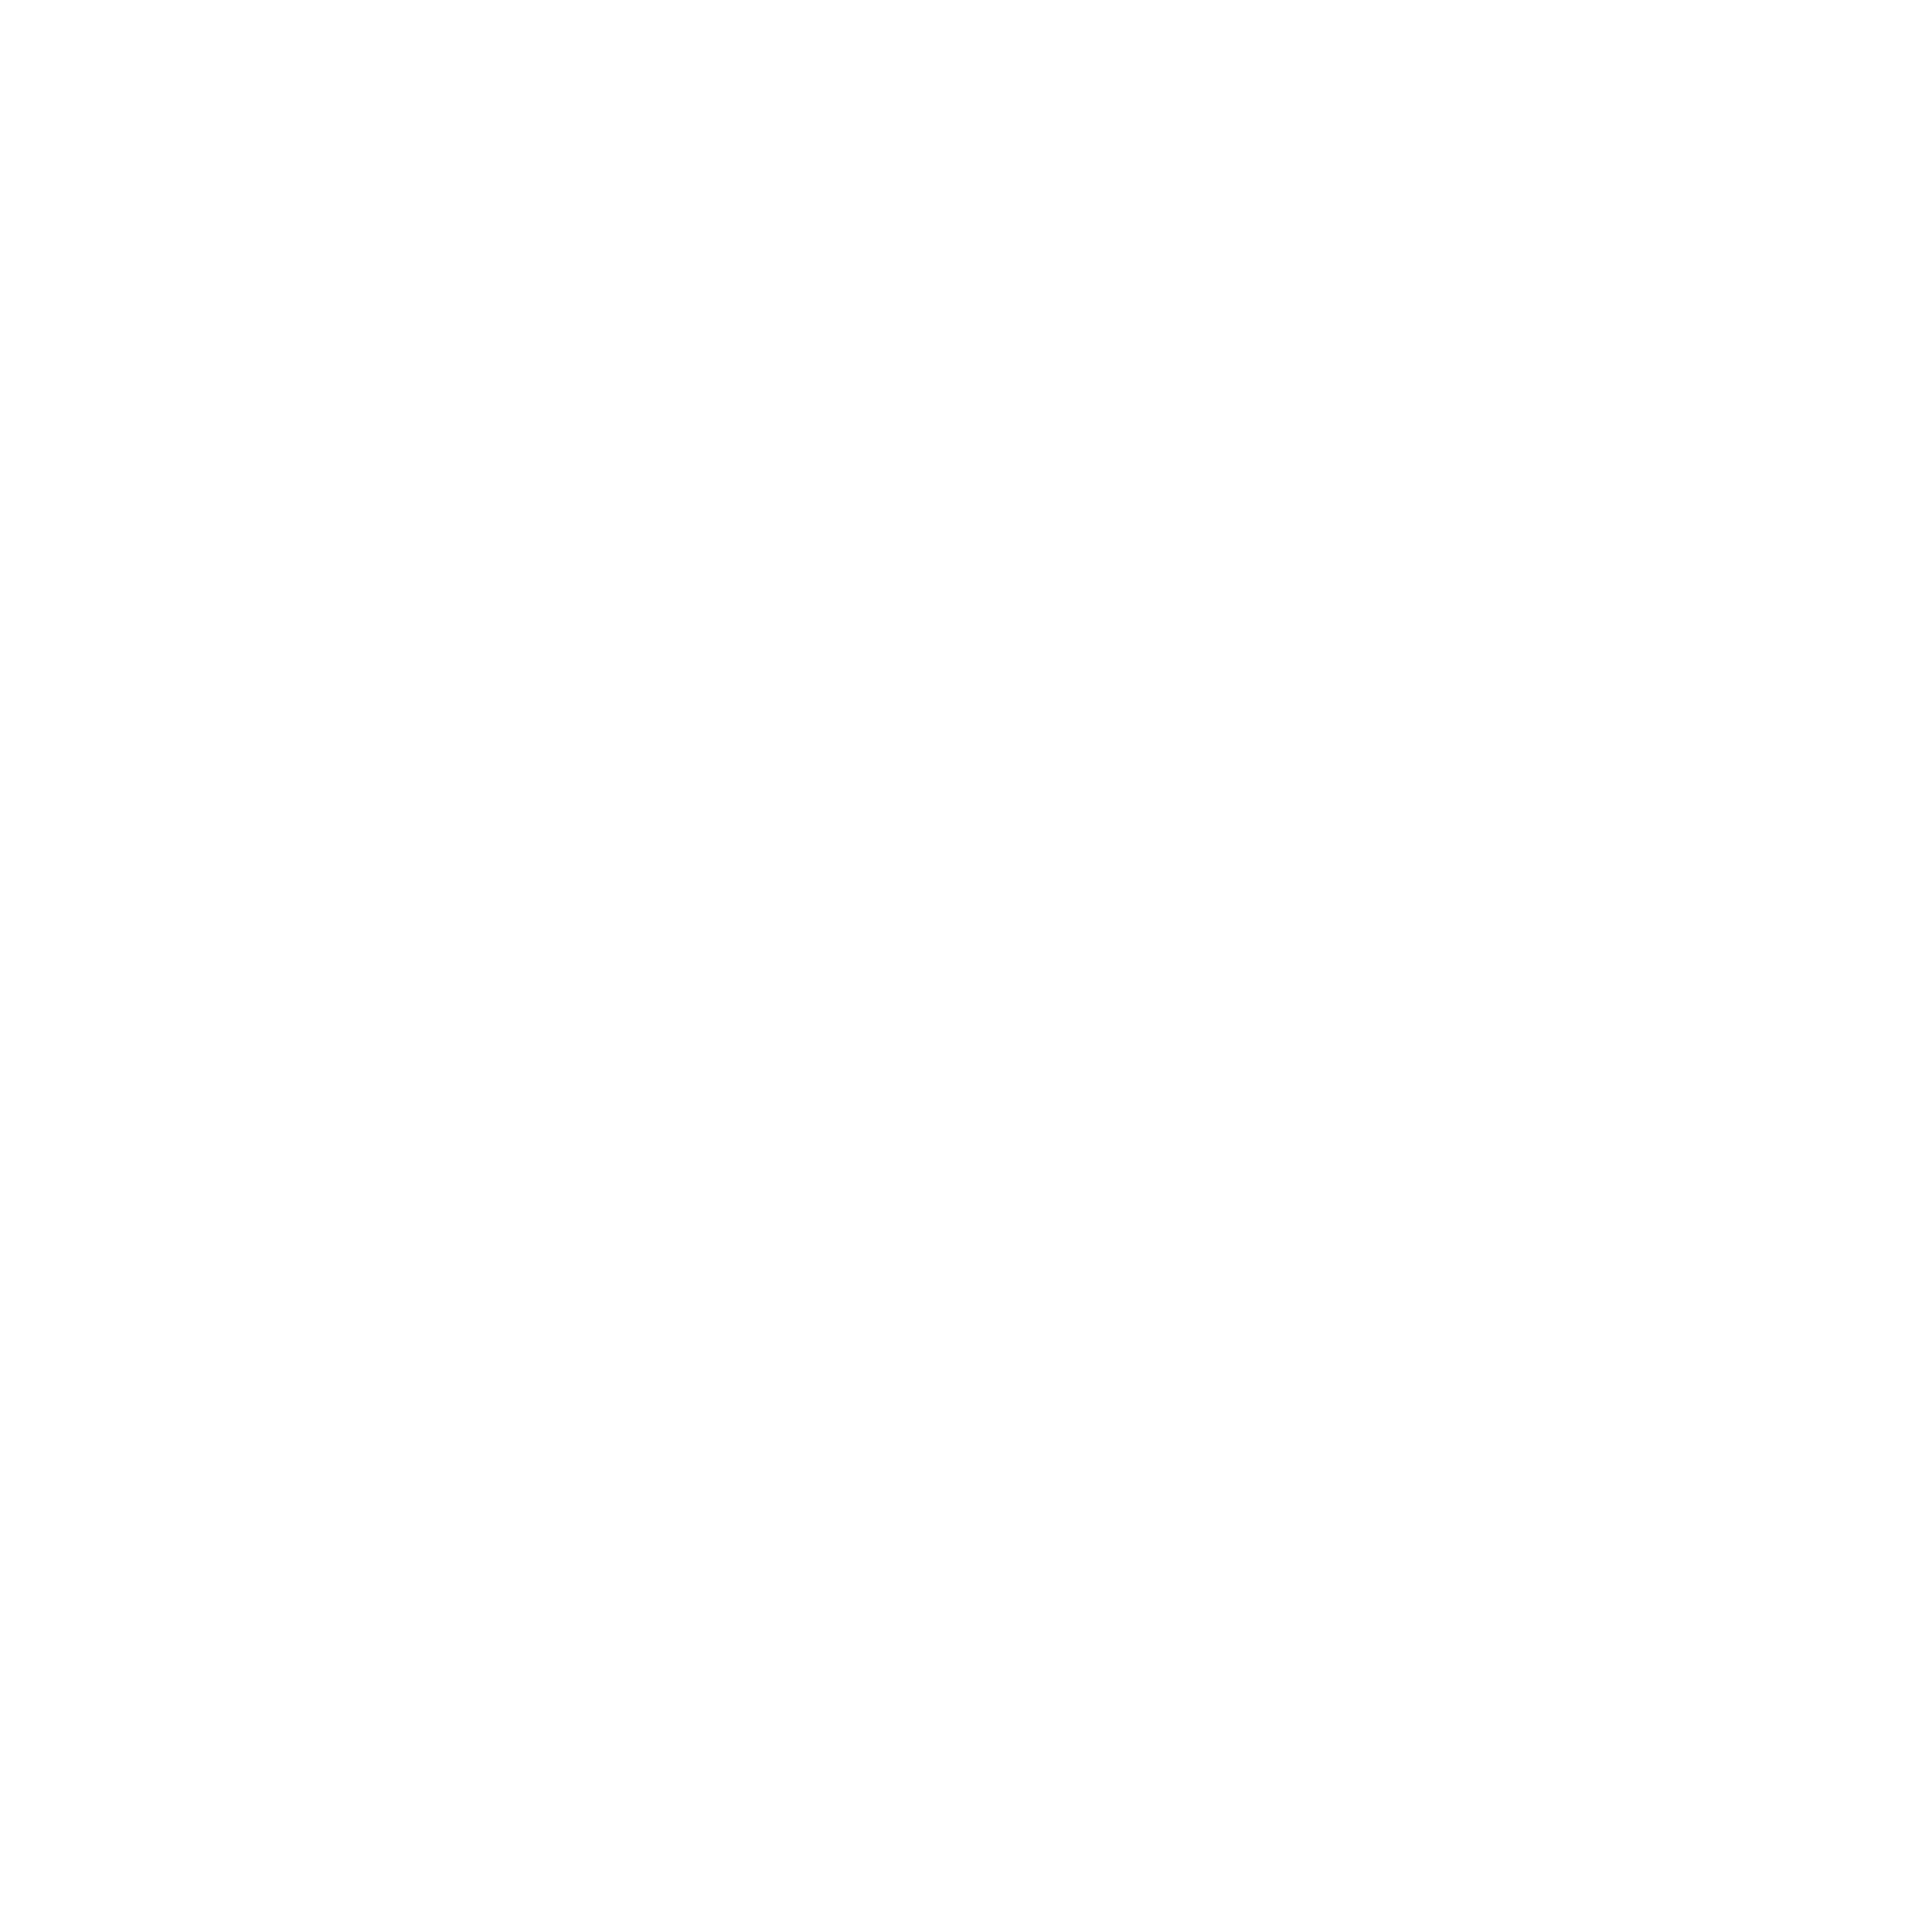 We Are CBR